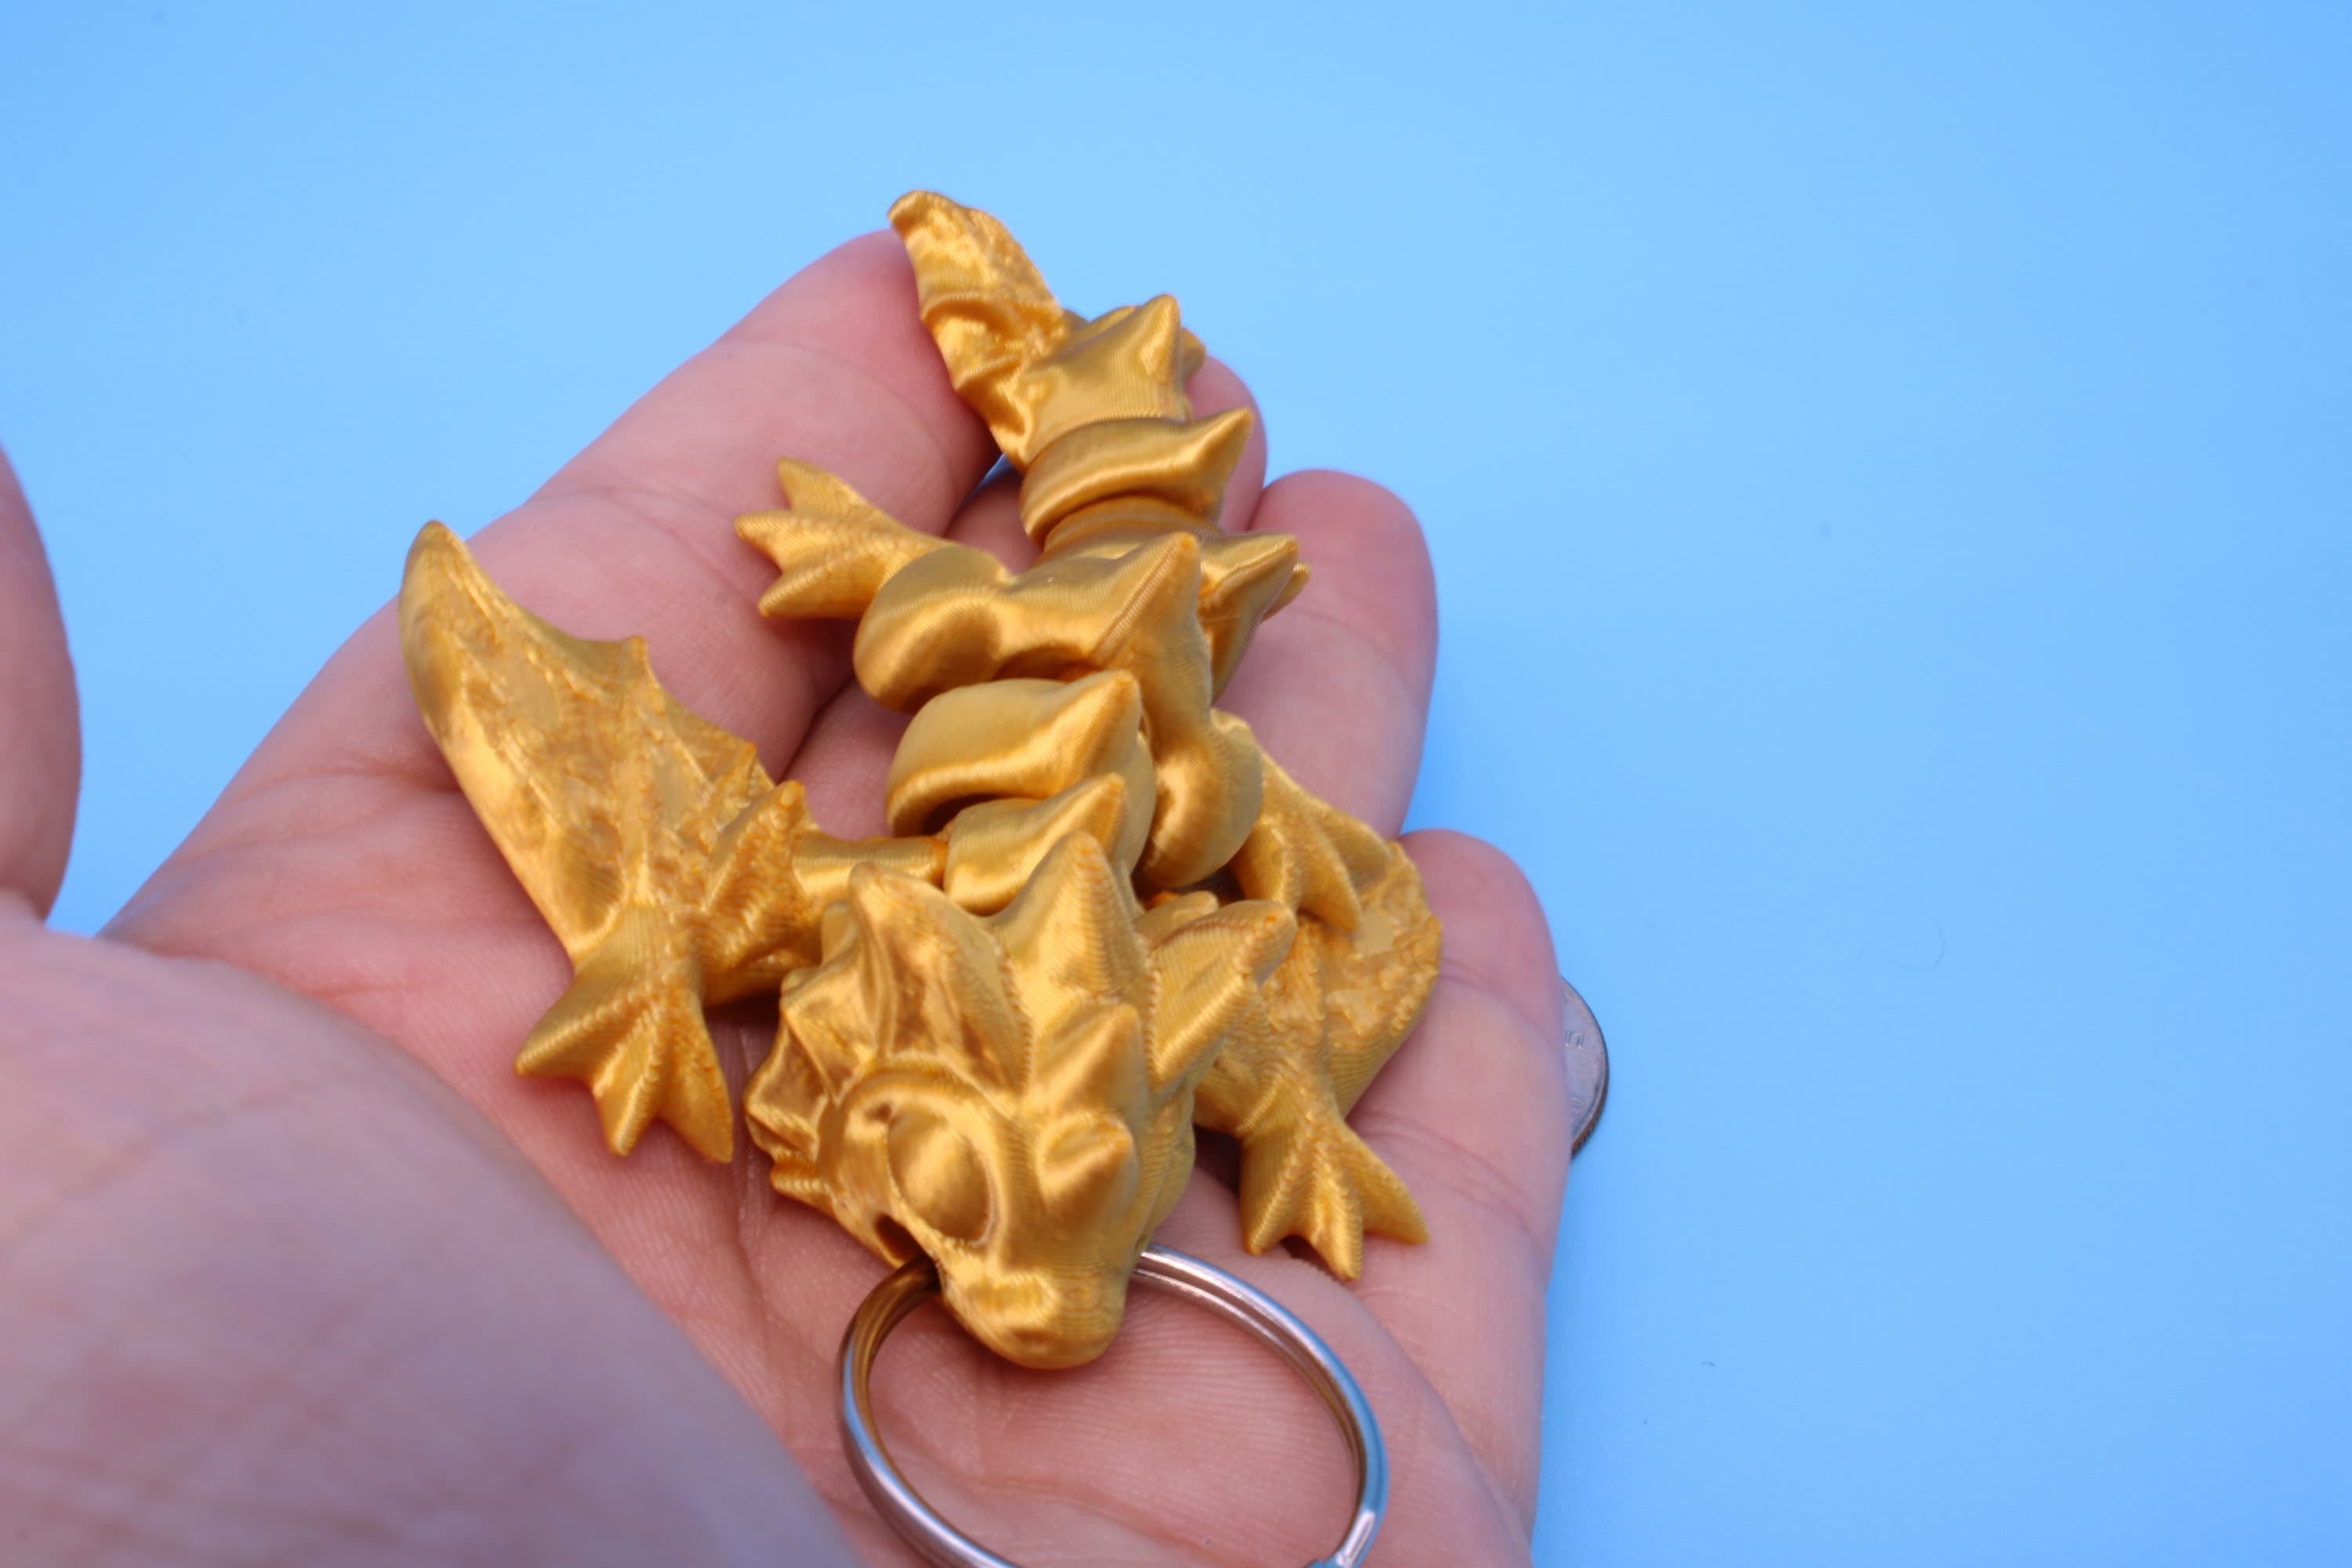 Baby Wyvern Dragon Keychain | 3D Printed Wyvern Dragon | 4 inches Dragon Friend | Sensory Toy | Fidget Toy | Flexi Dragon.